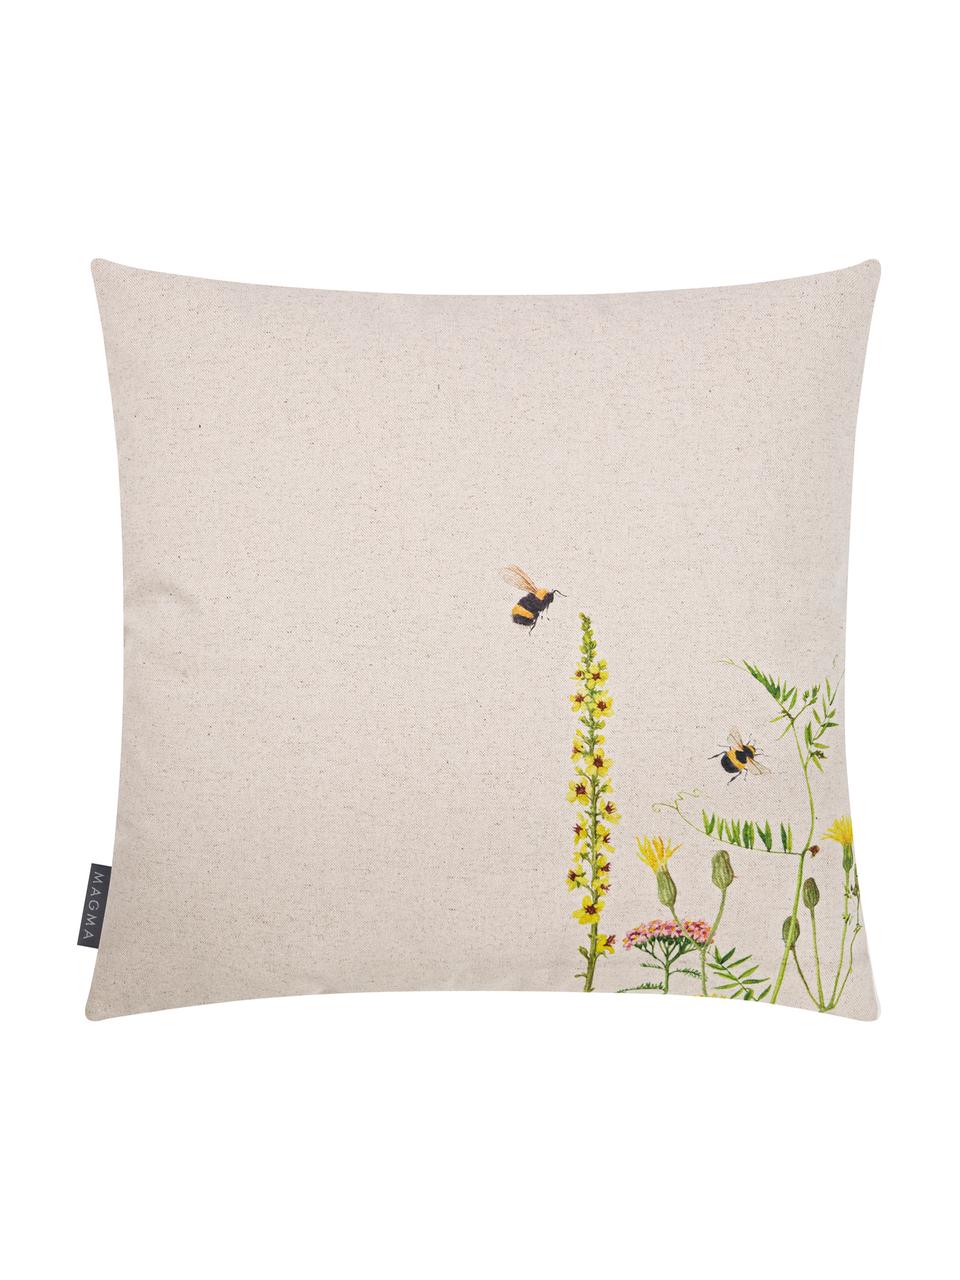 Dubbelzijdige kussenhoes Biene met bloemen motief, 85% katoen, 15% linnen, Beige, meerkleurig, B 50 x L 50 cm